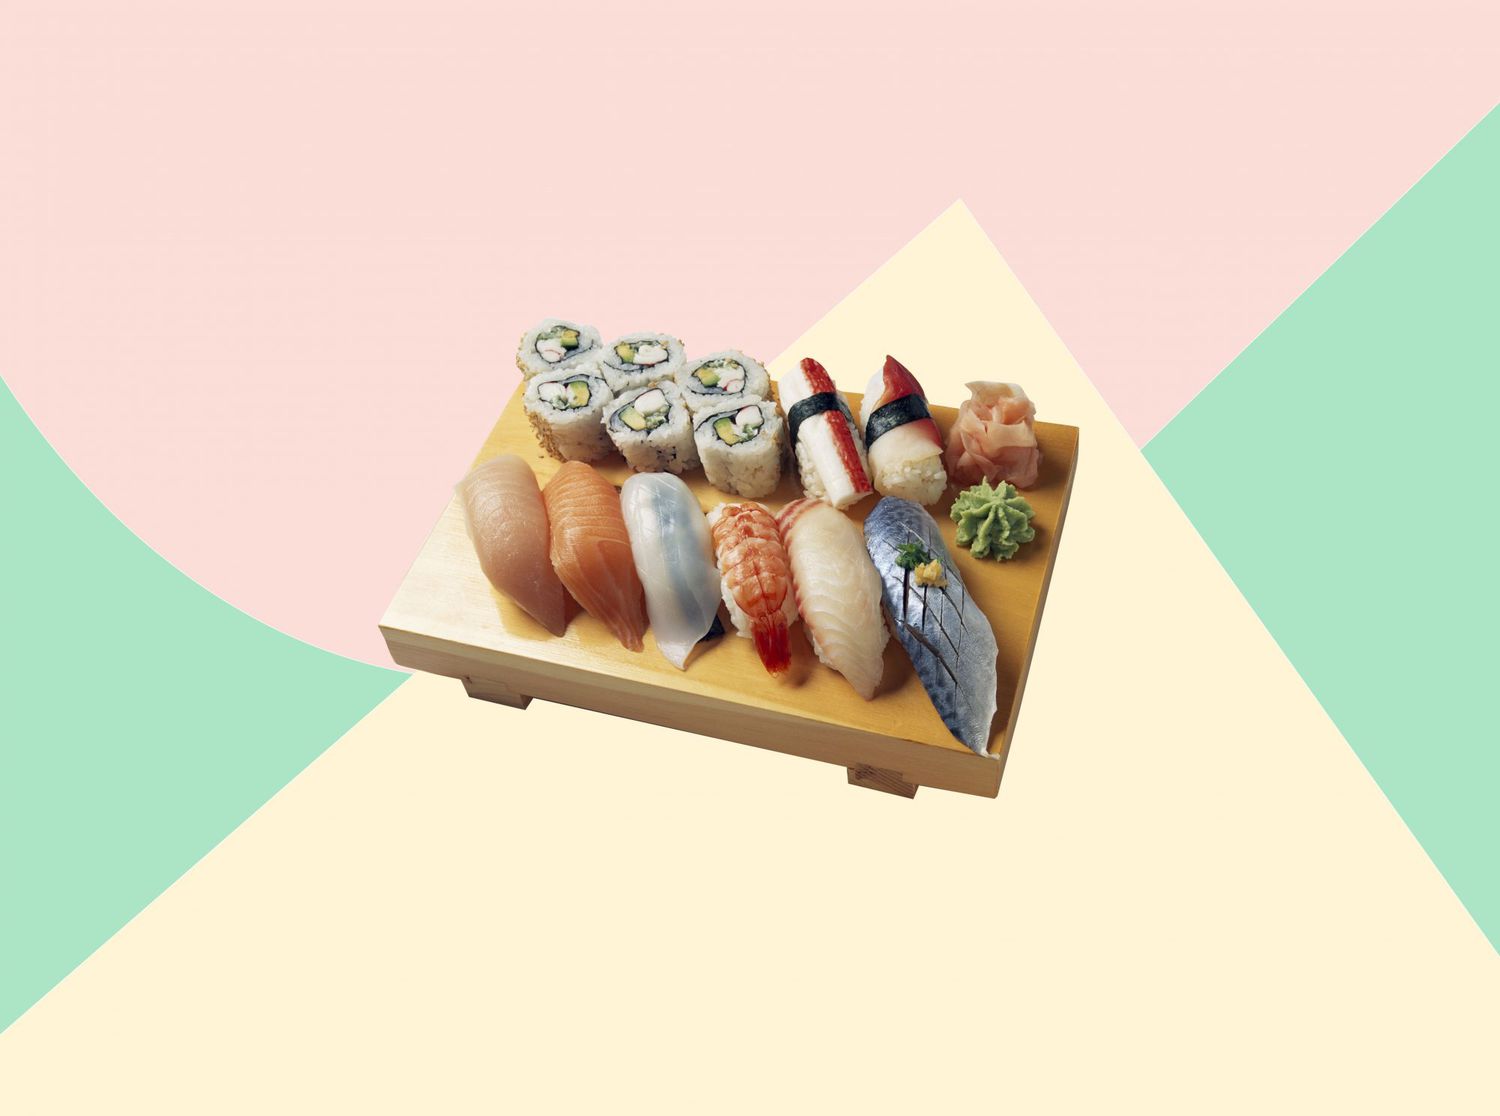 ez a Bestmdash;és Onlymdash;Egy híres Sushi séf